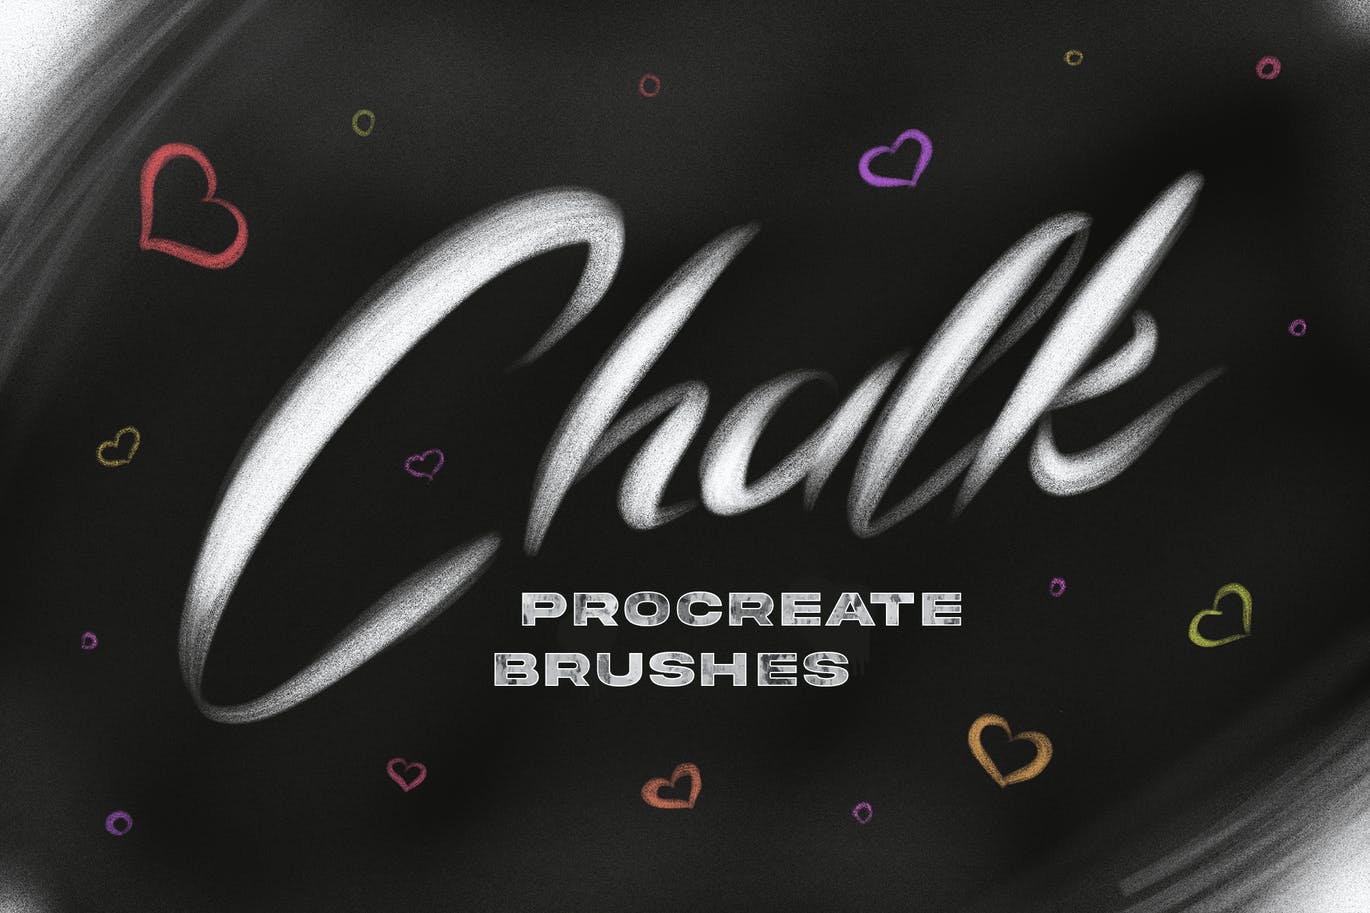 粉笔效果Procreate笔刷素材 Chalk Procreate Brushes 笔刷资源 第8张